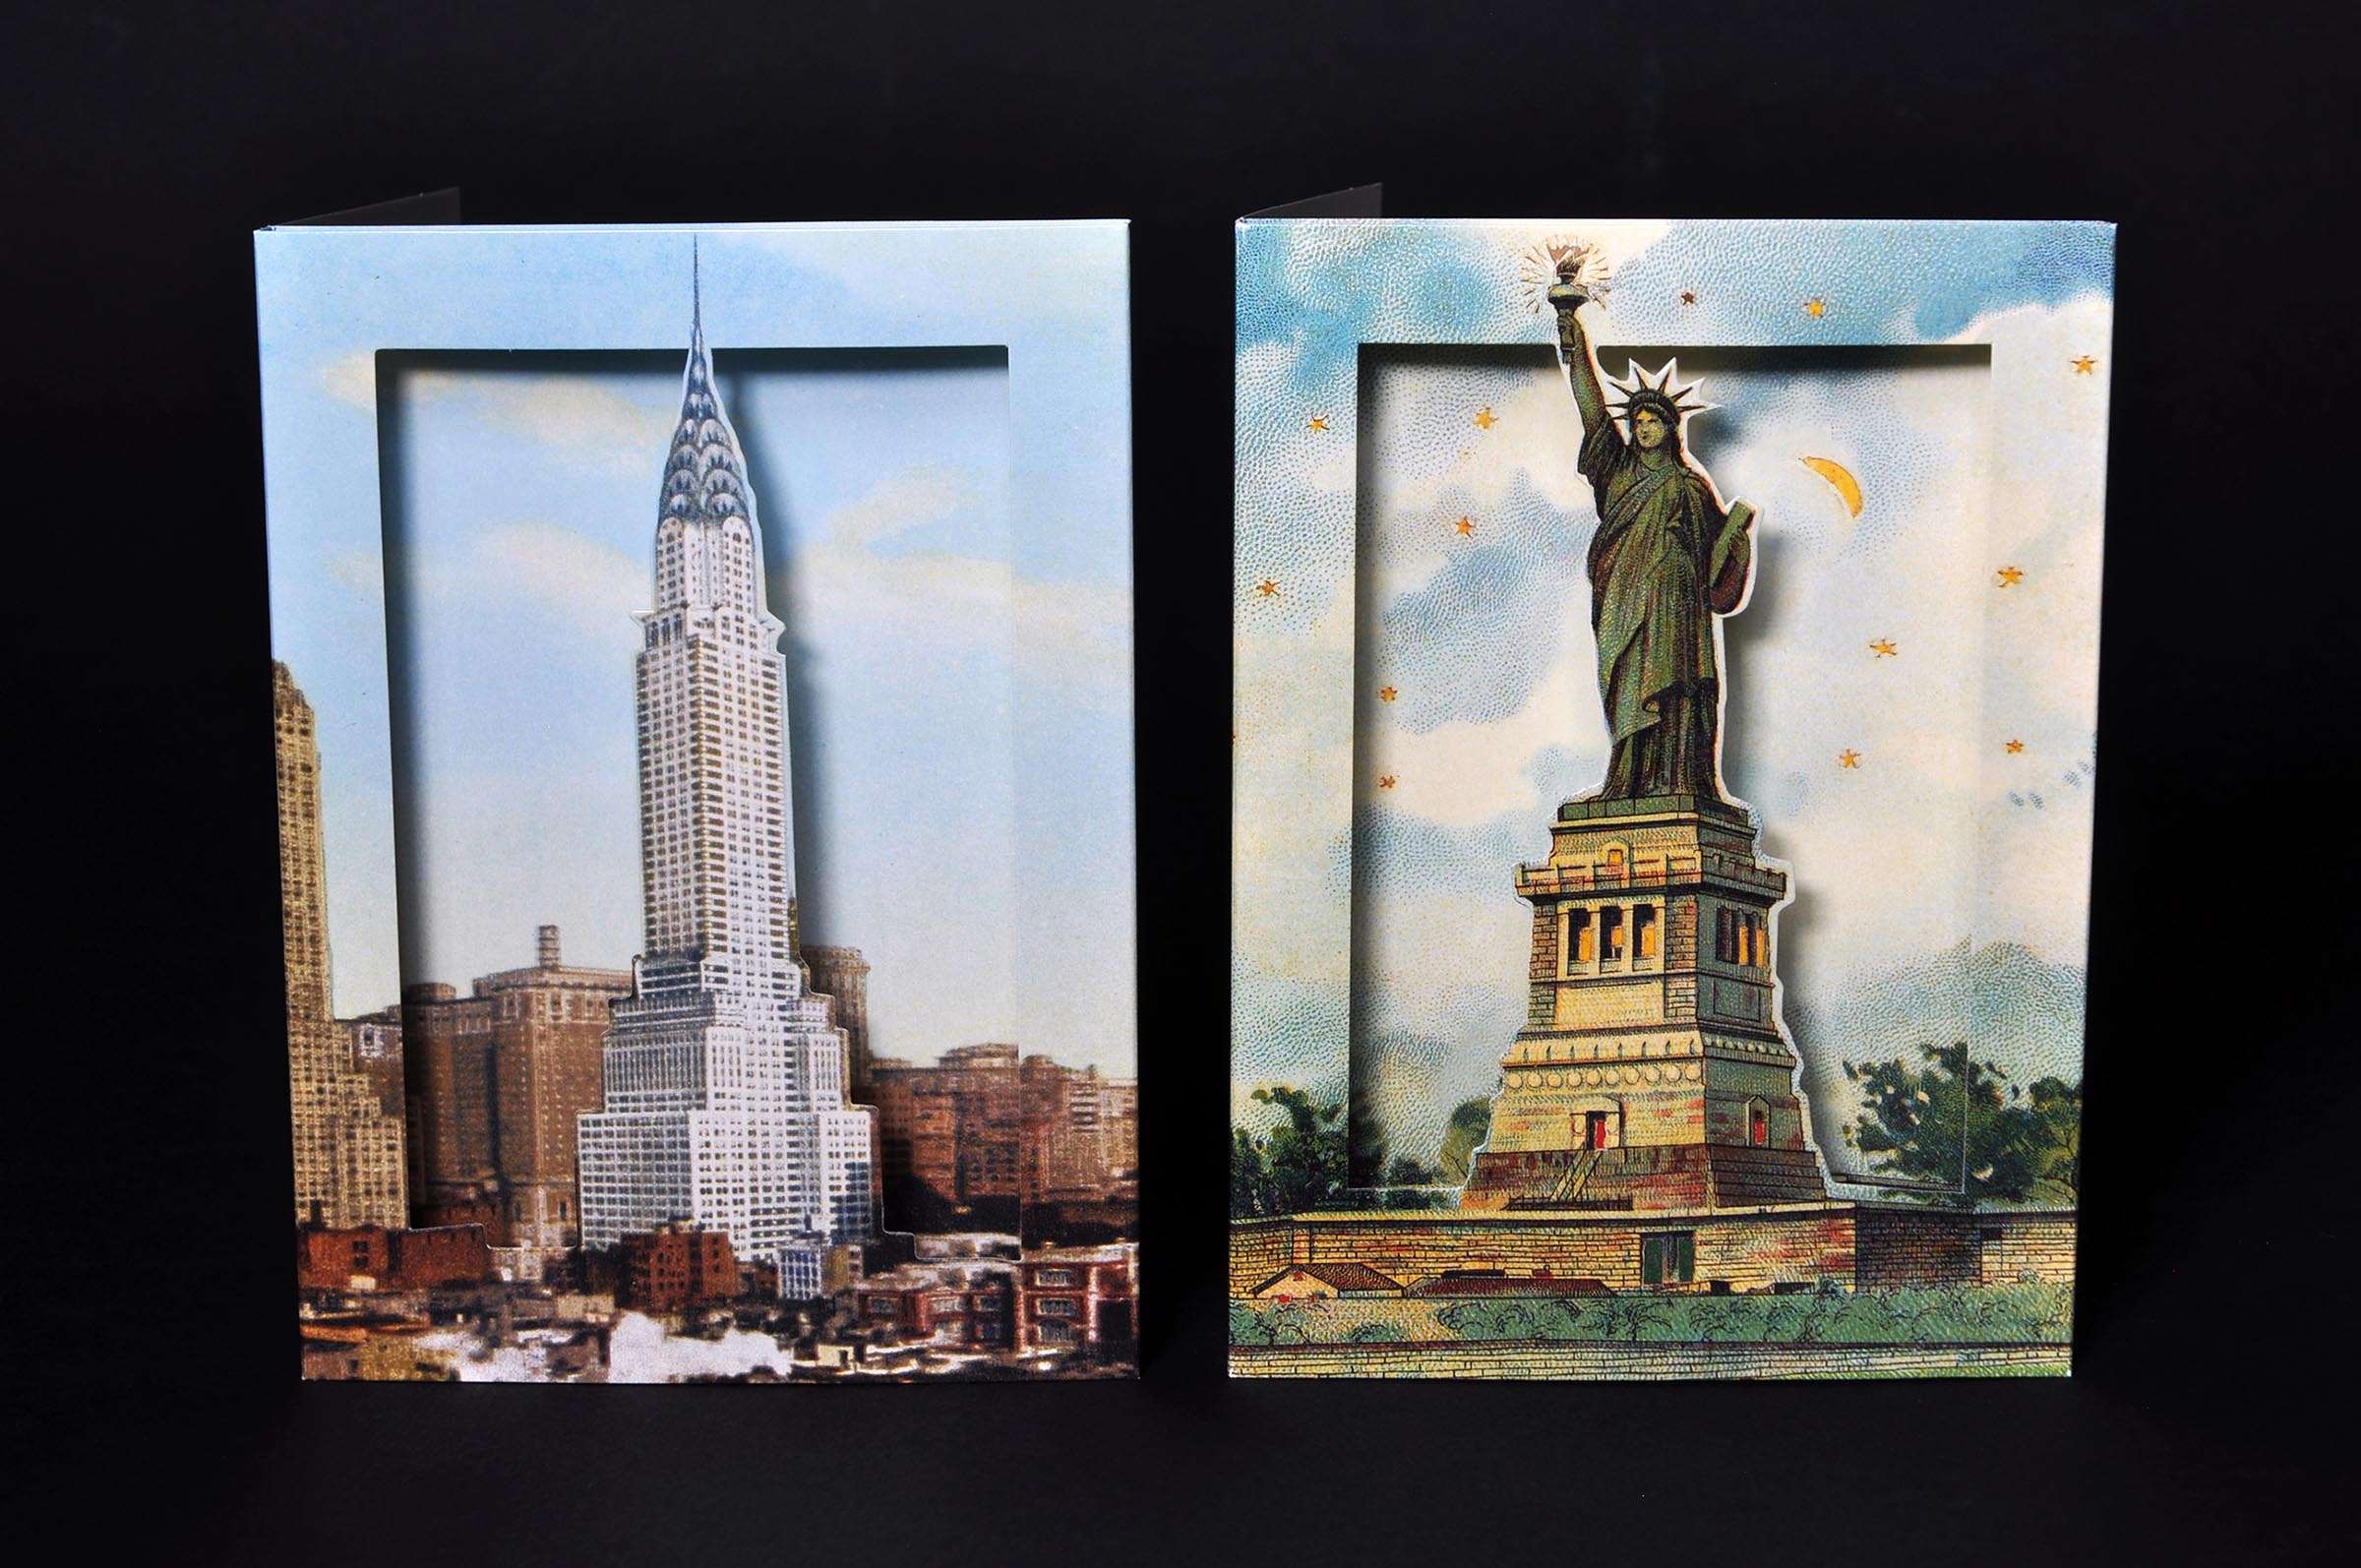 The Met's pop-up notecards liberty